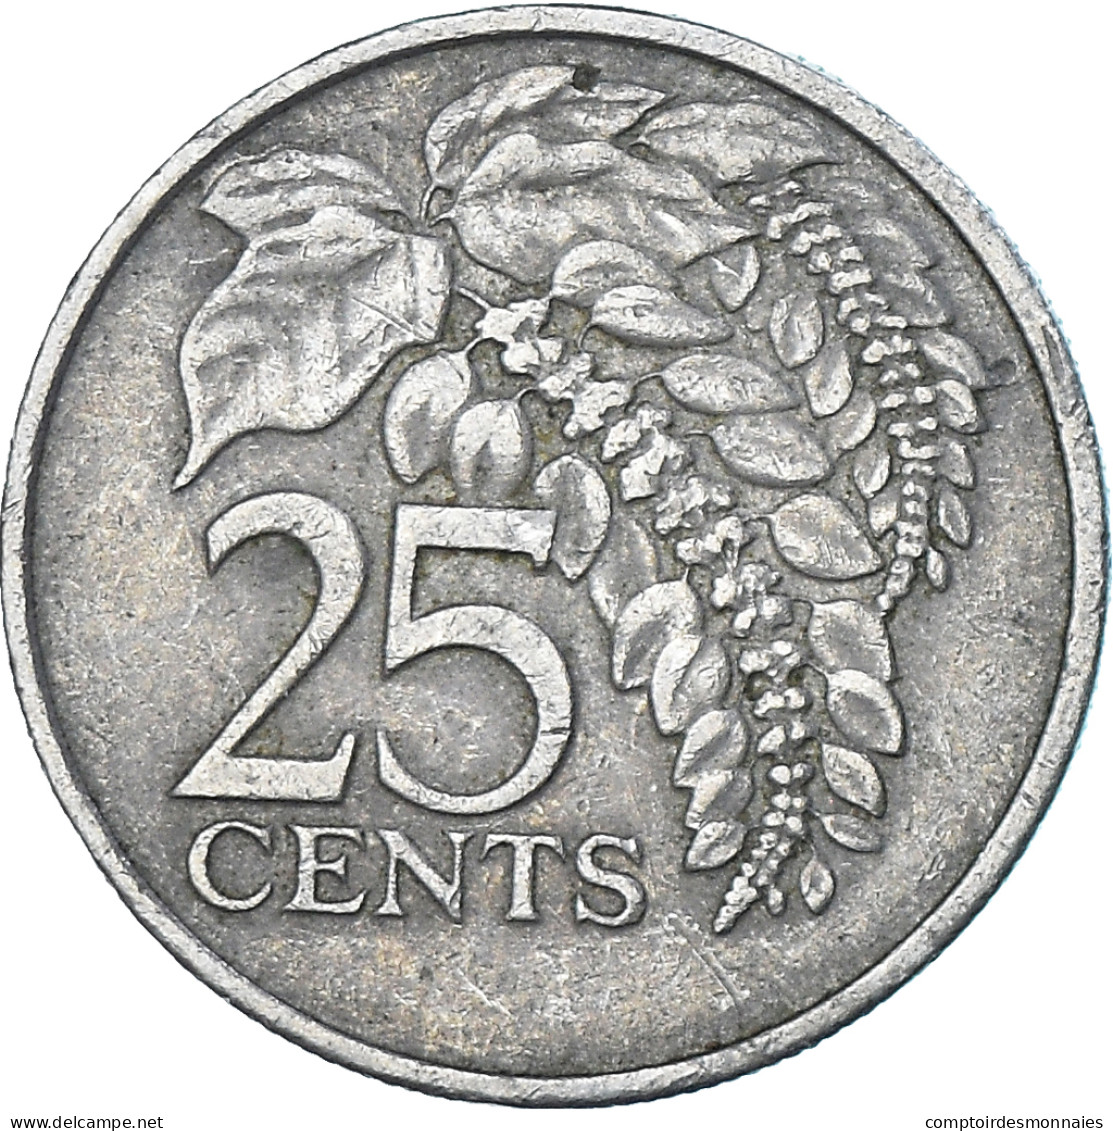 Monnaie, Trinité-et-Tobago, 25 Cents, 1979 - Trinidad & Tobago